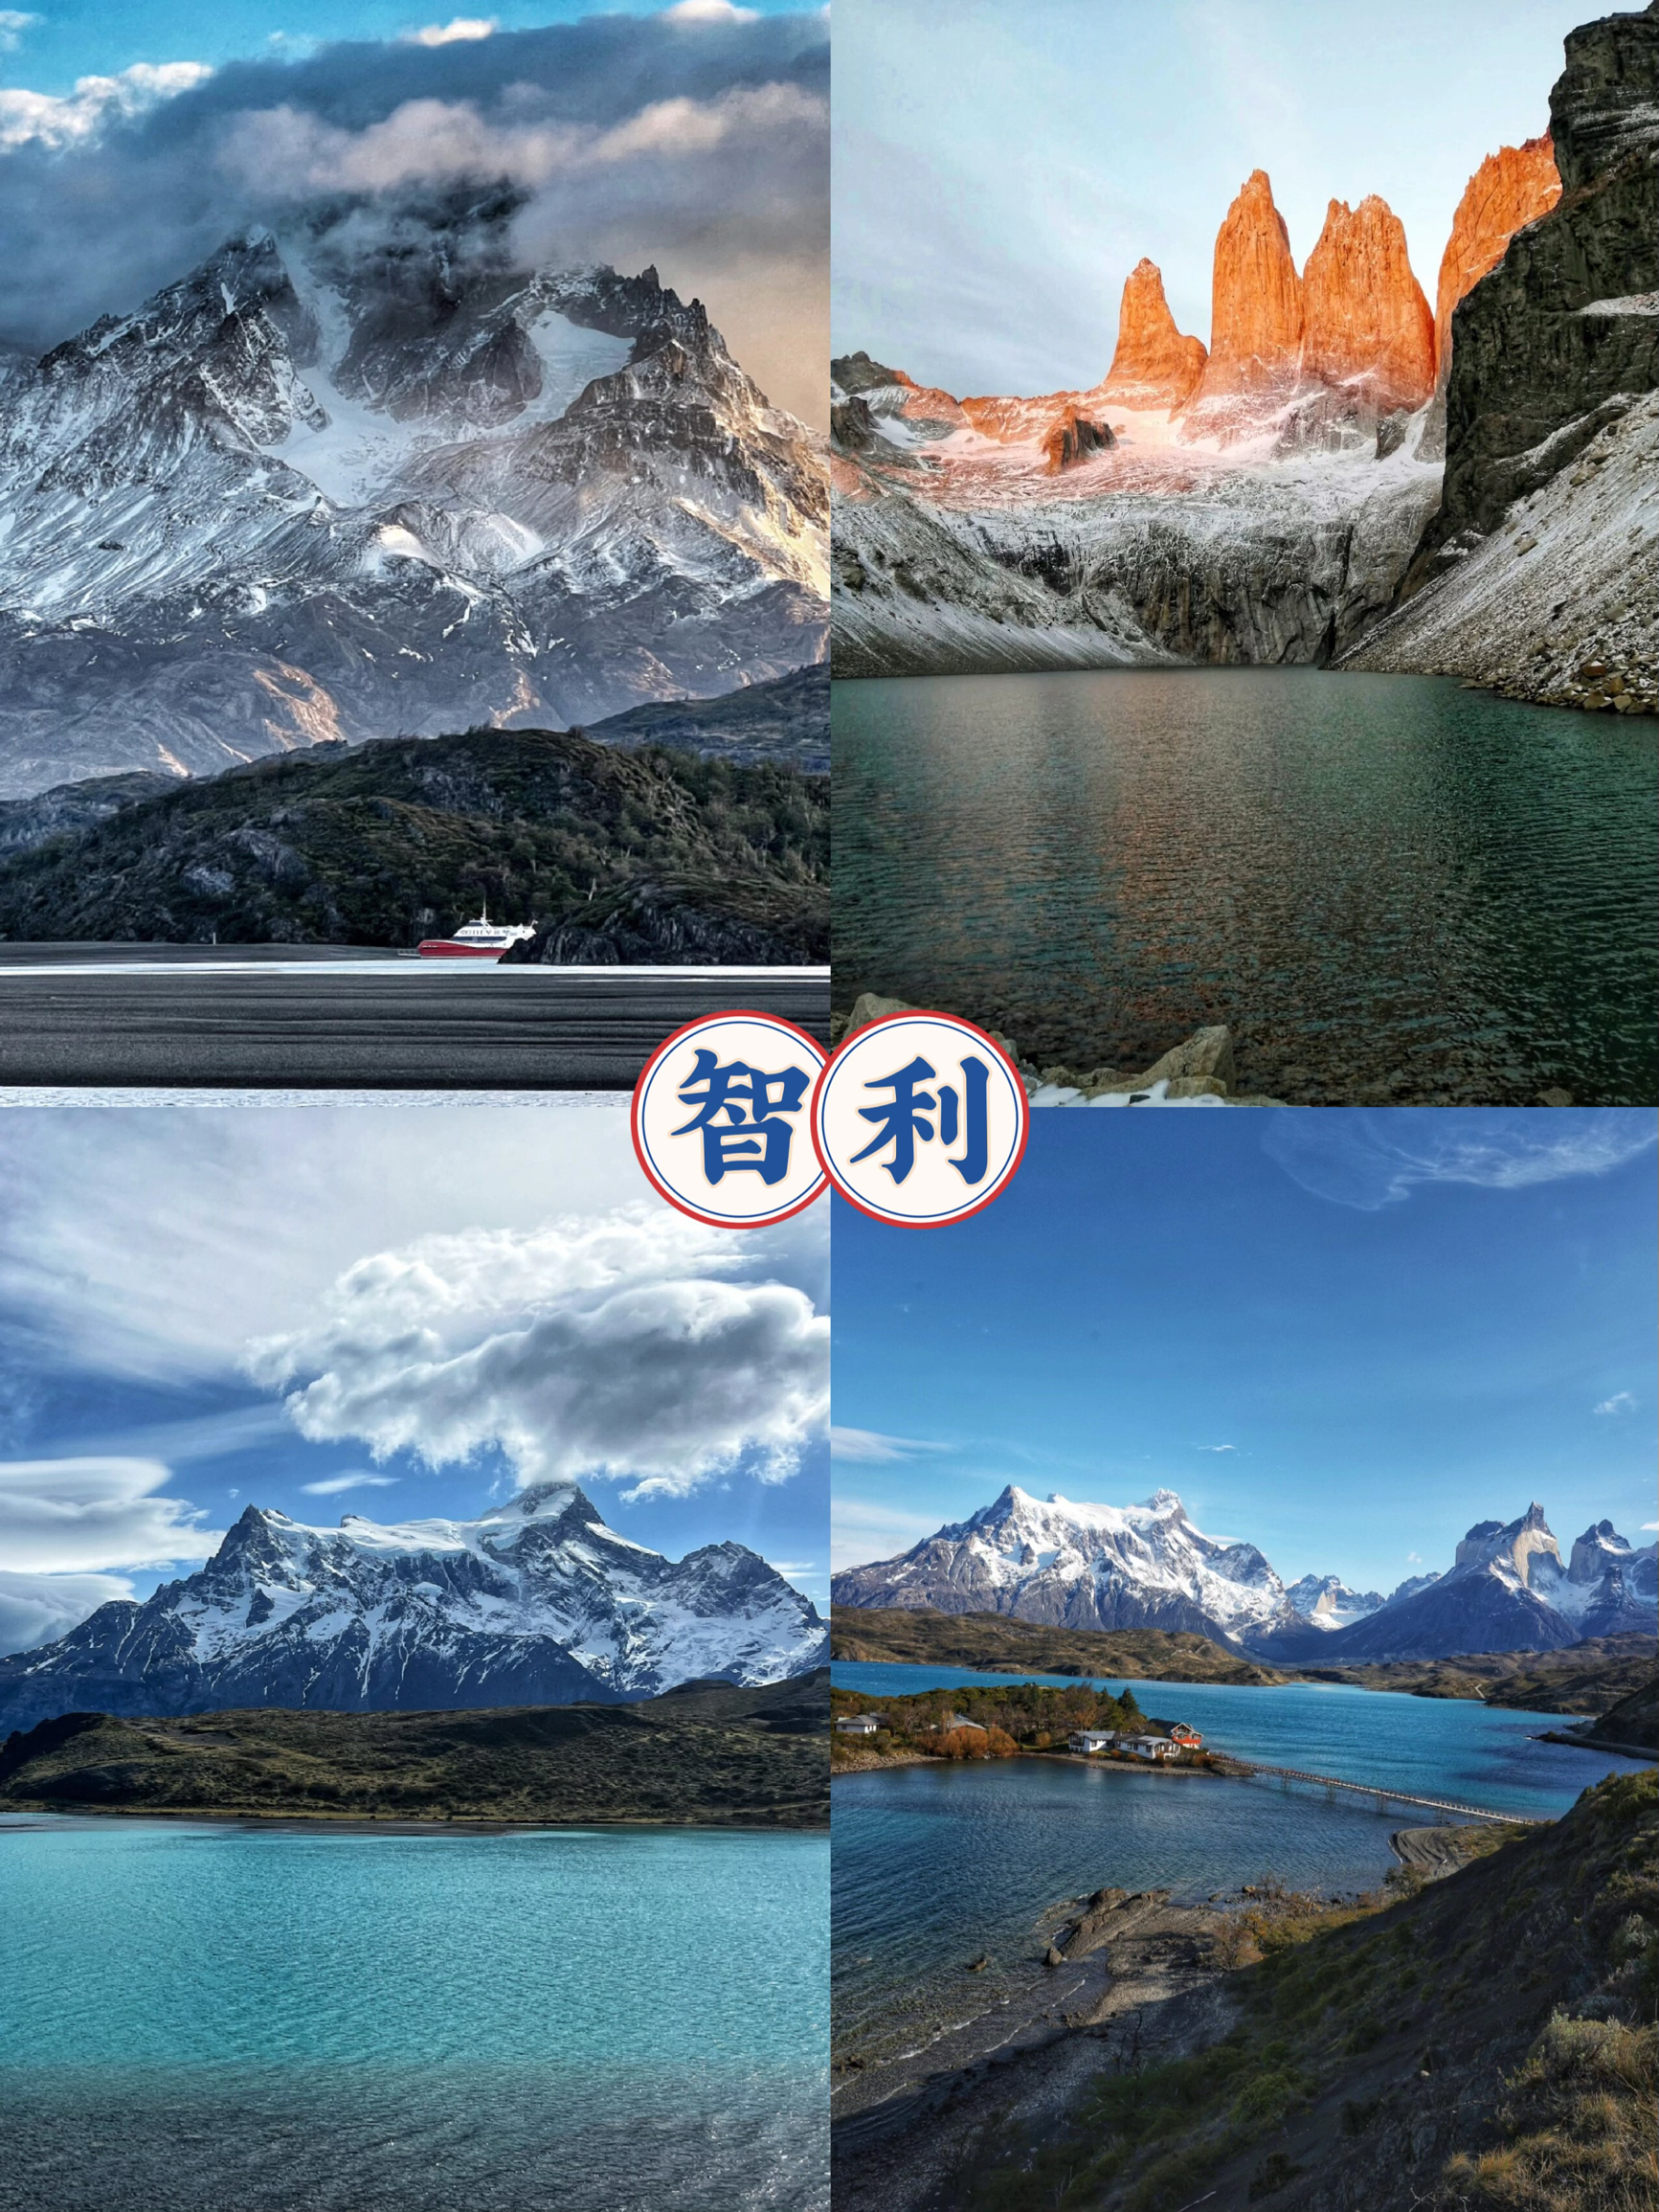 “珍藏智利之美：百内国家公园探秘”